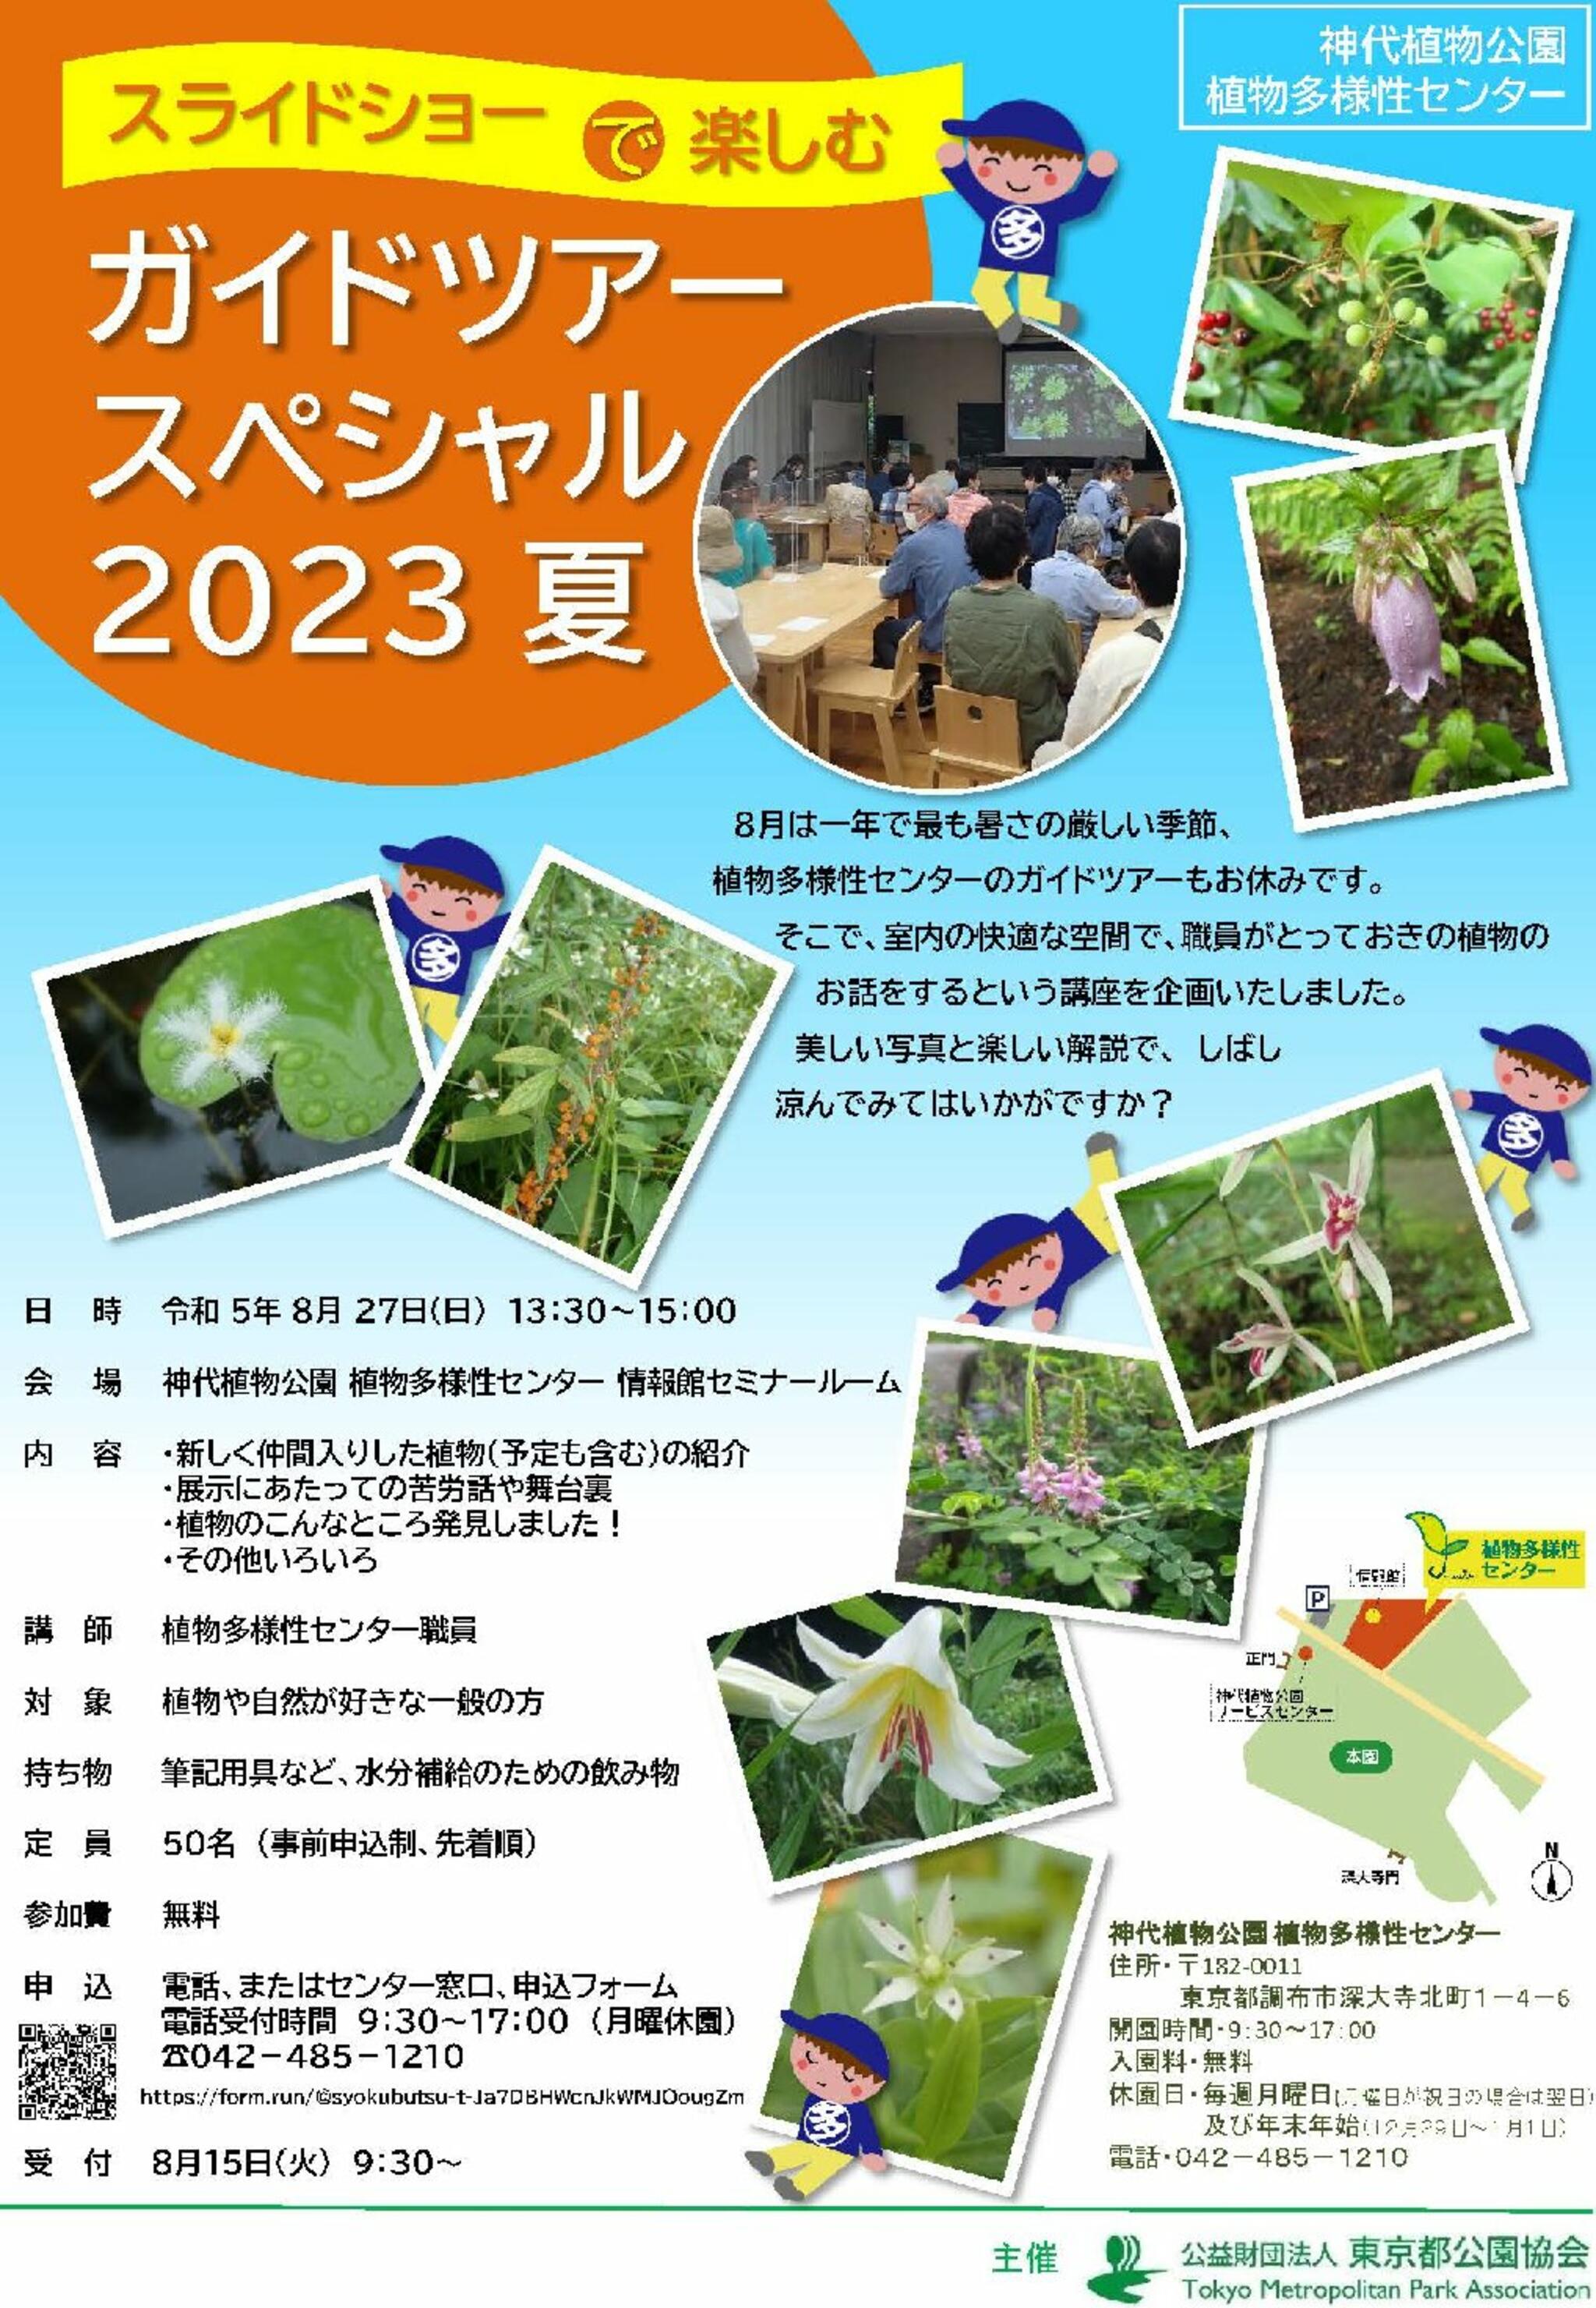 神代植物公園からのお知らせ(植物多様性センター「ガイドツアースペシャル 2023夏」を実施します！)に関する写真